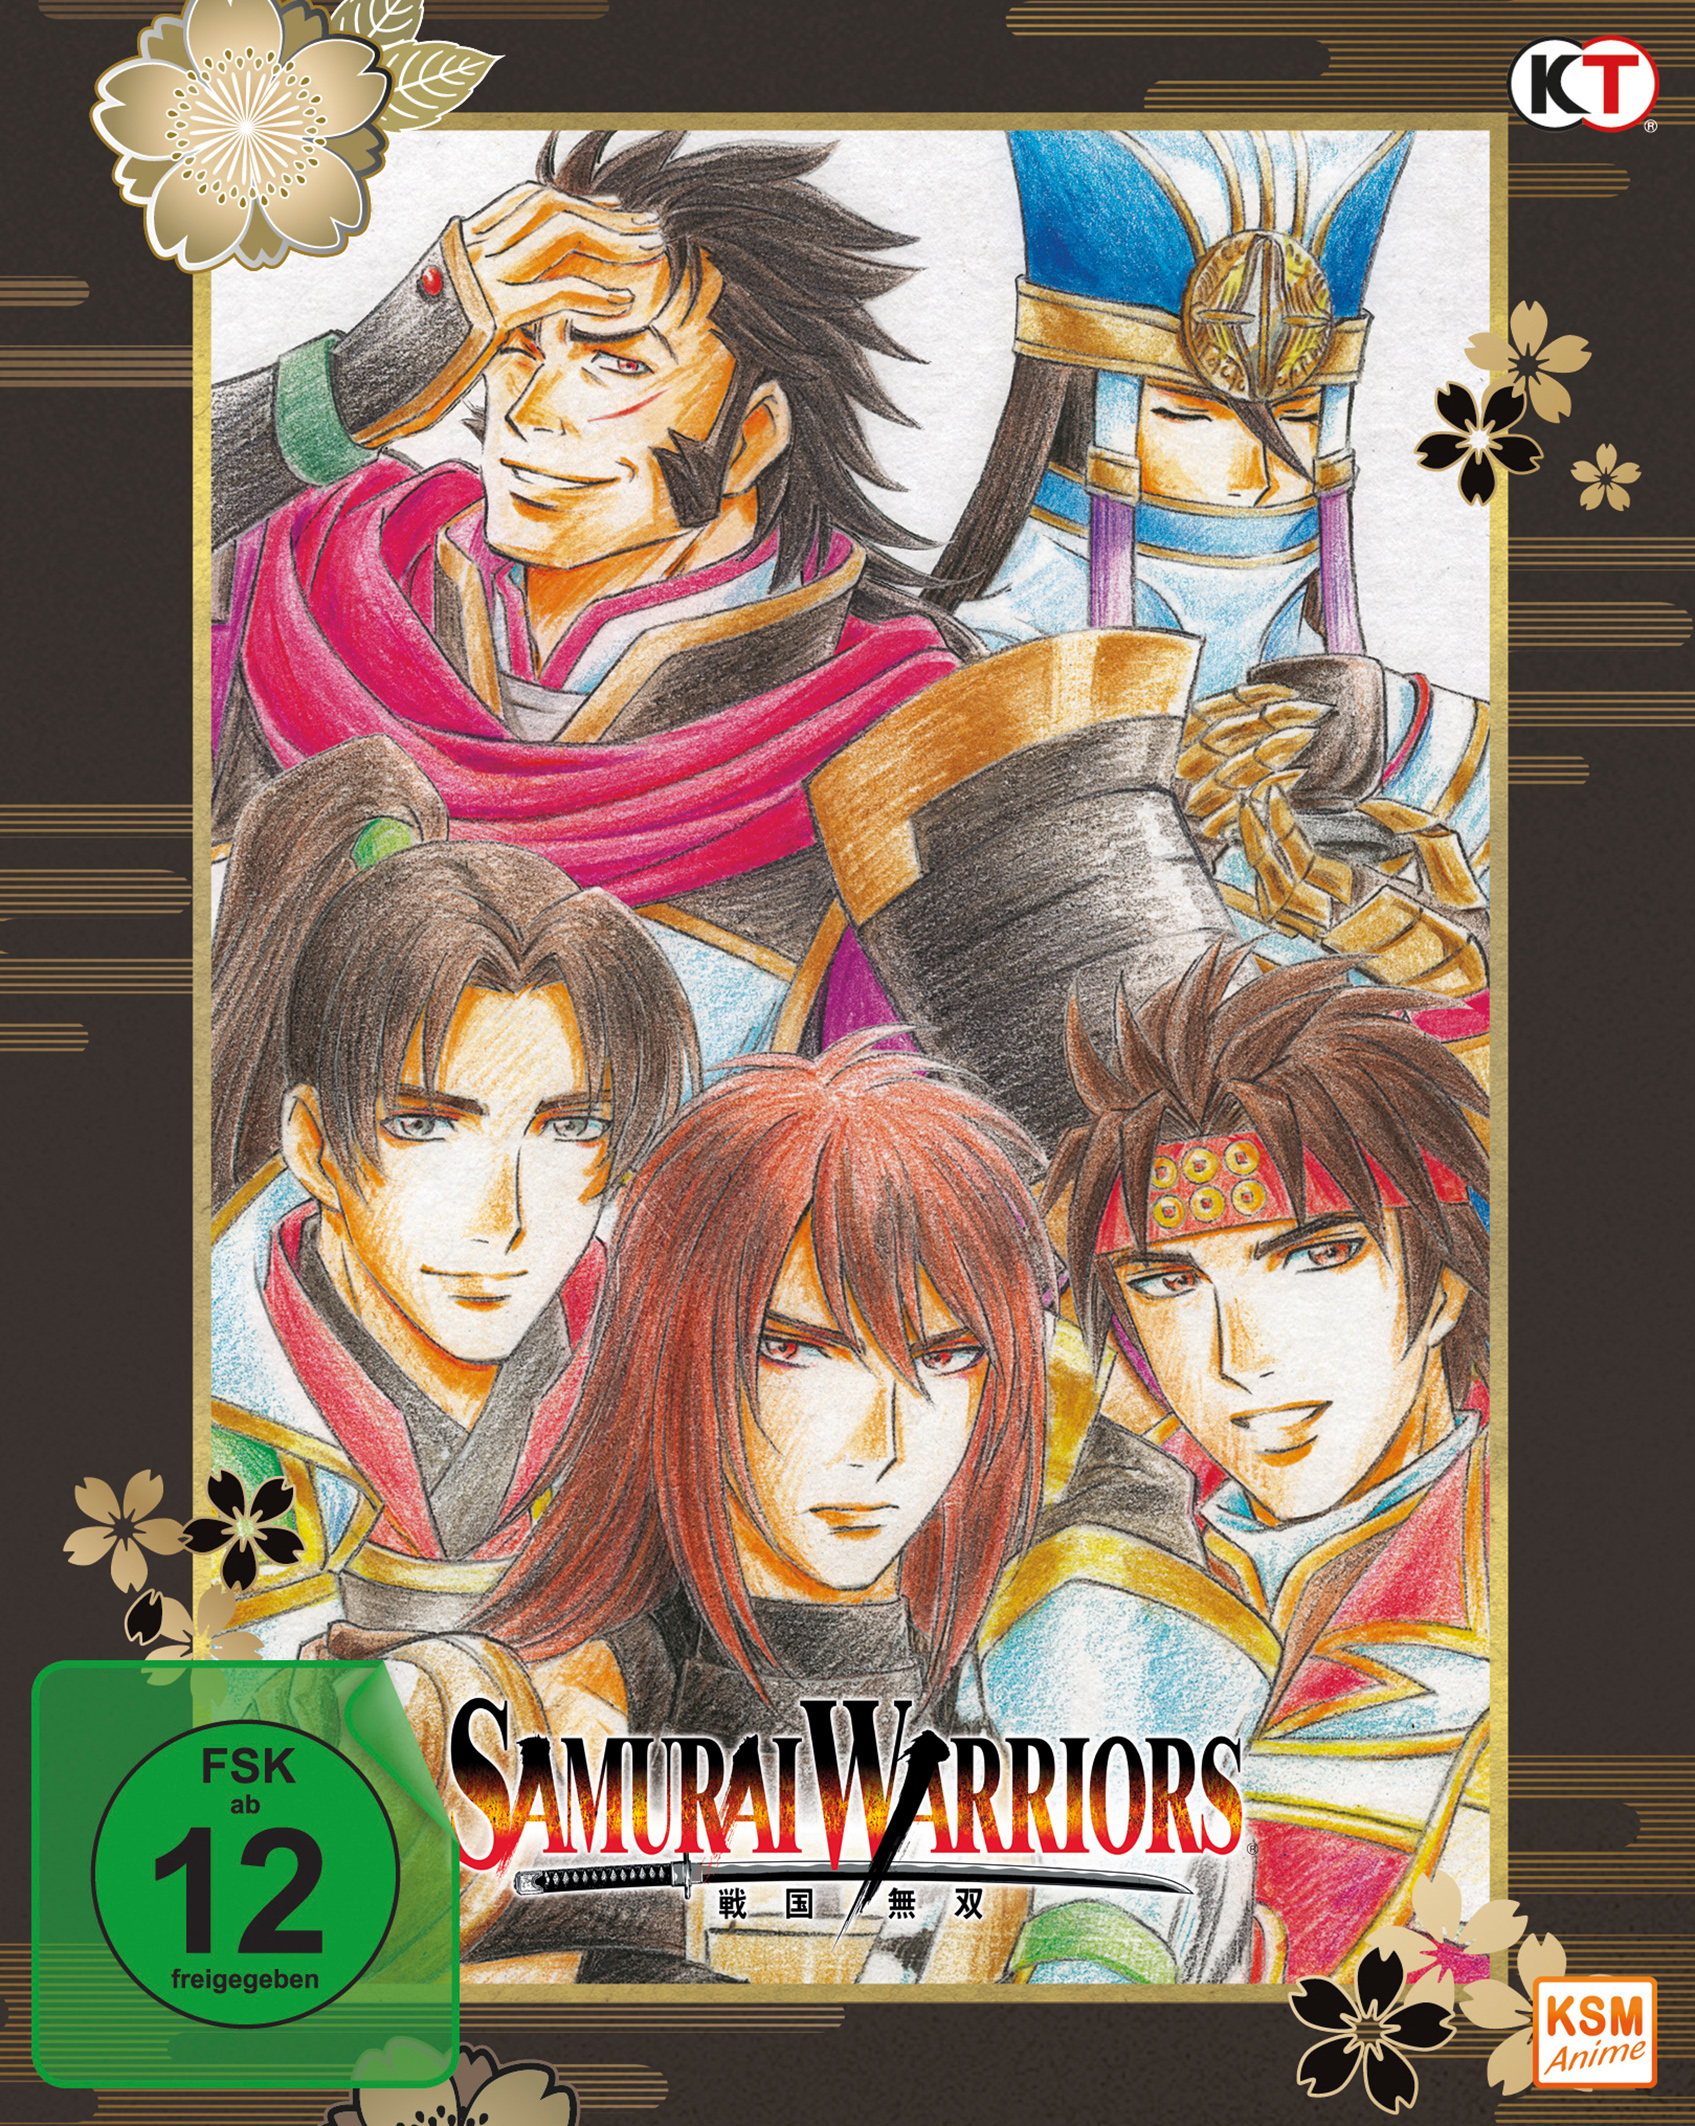 Samurai Warriors - Ep.1-12 + Movie Sp.: Die Legende von Sanada -3 BRs von KSM